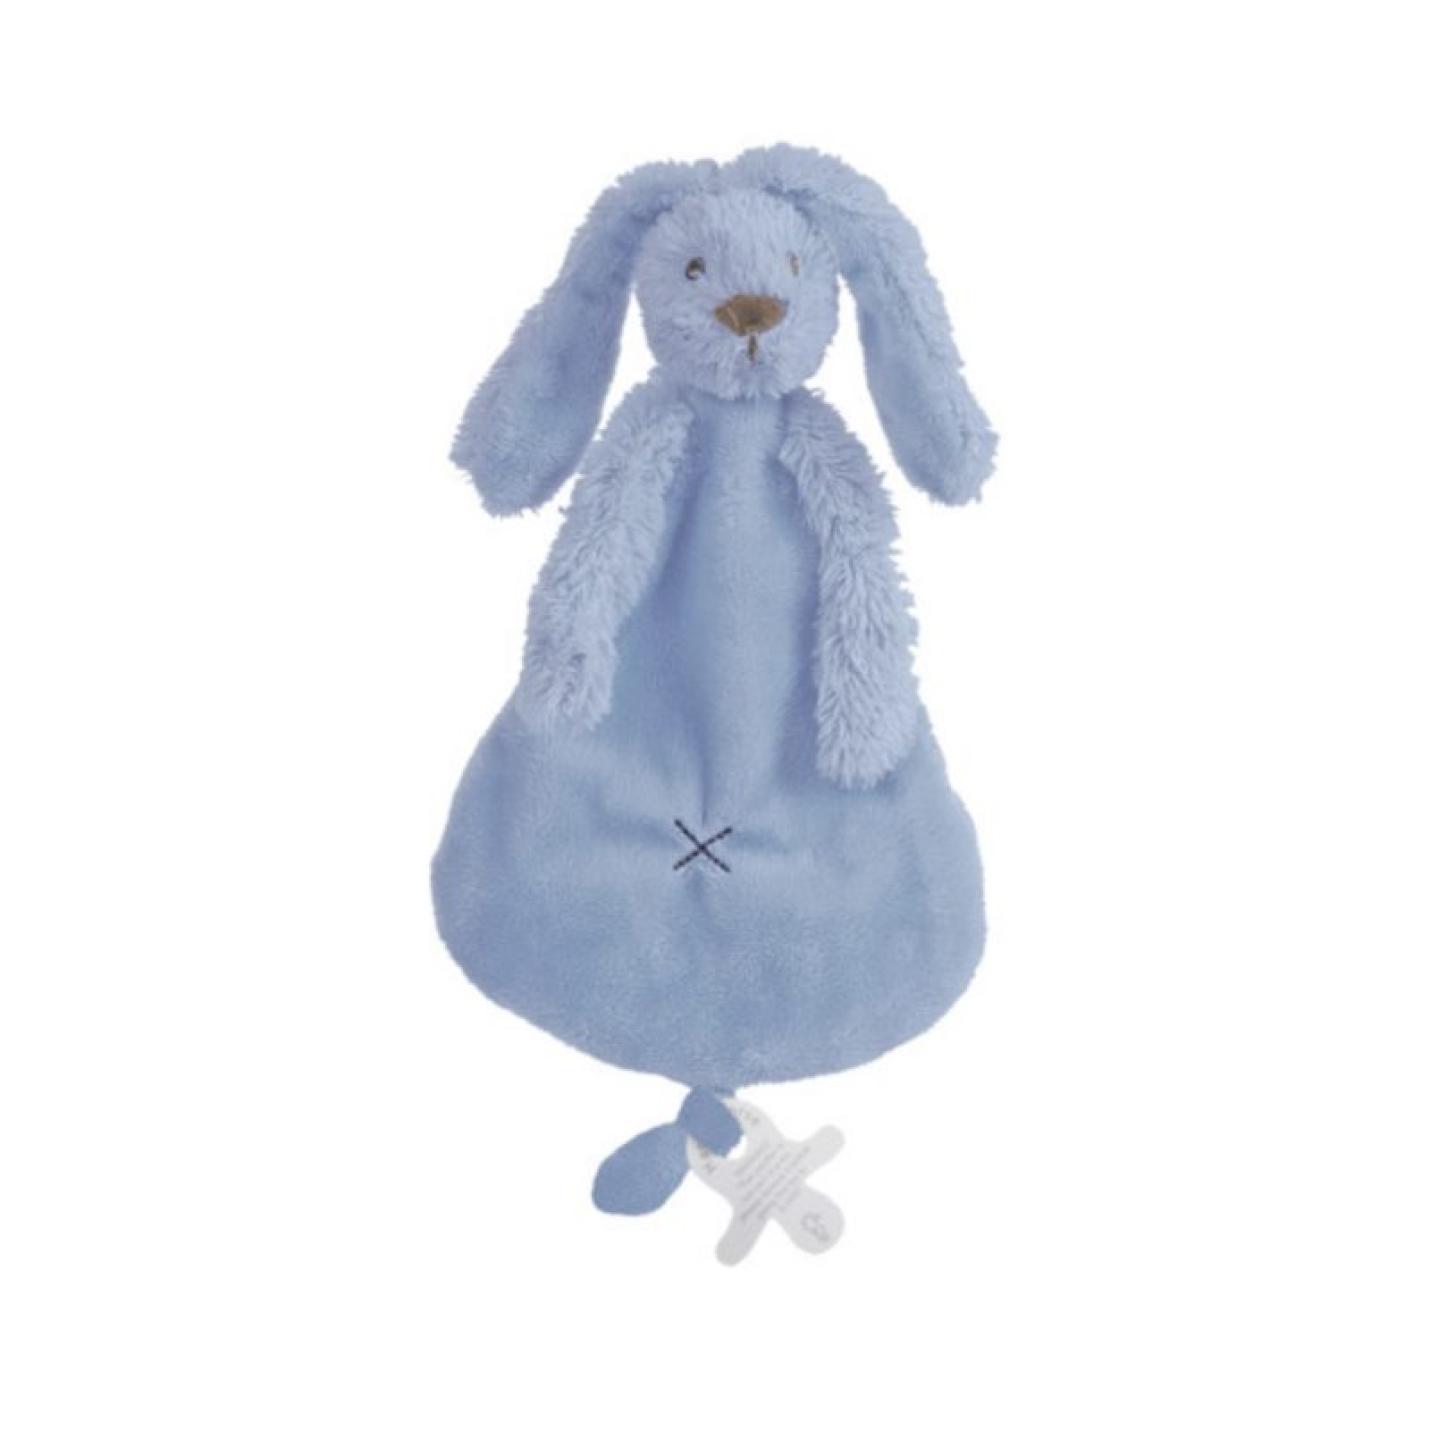 Knuffeldoekje Rabbit Richie Blue is een stoffenf plat goed doekje in vorm van peer met konijnkopje erbovenop lange oren en armpjes onder het hoofdje met onderaan lus voor speen